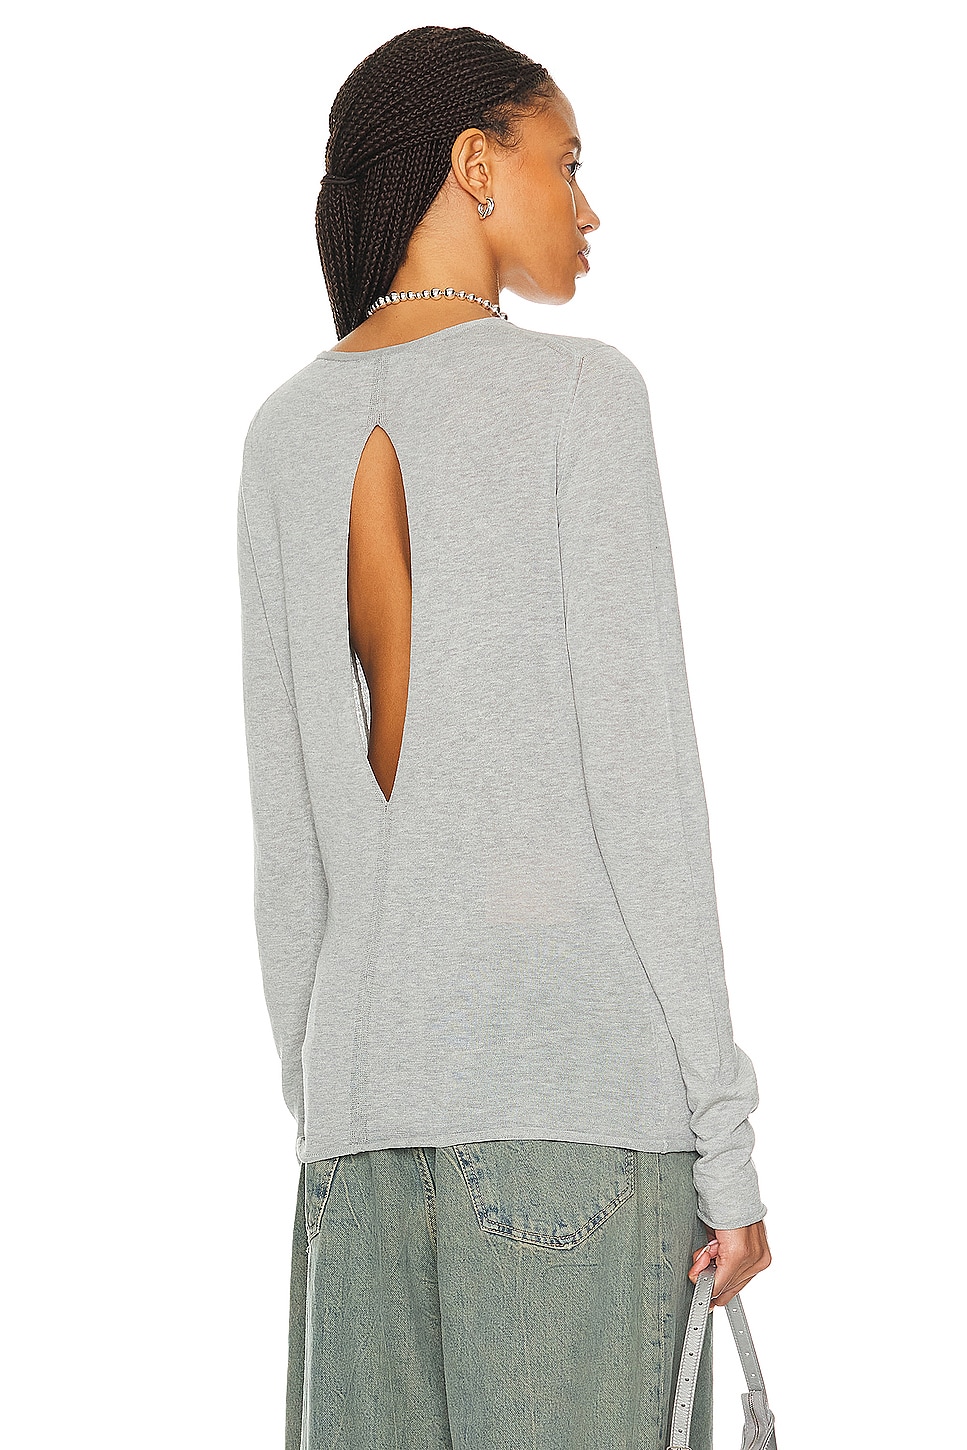 Image 1 of Proenza Schouler Tina Sweater in Light Grey Melange